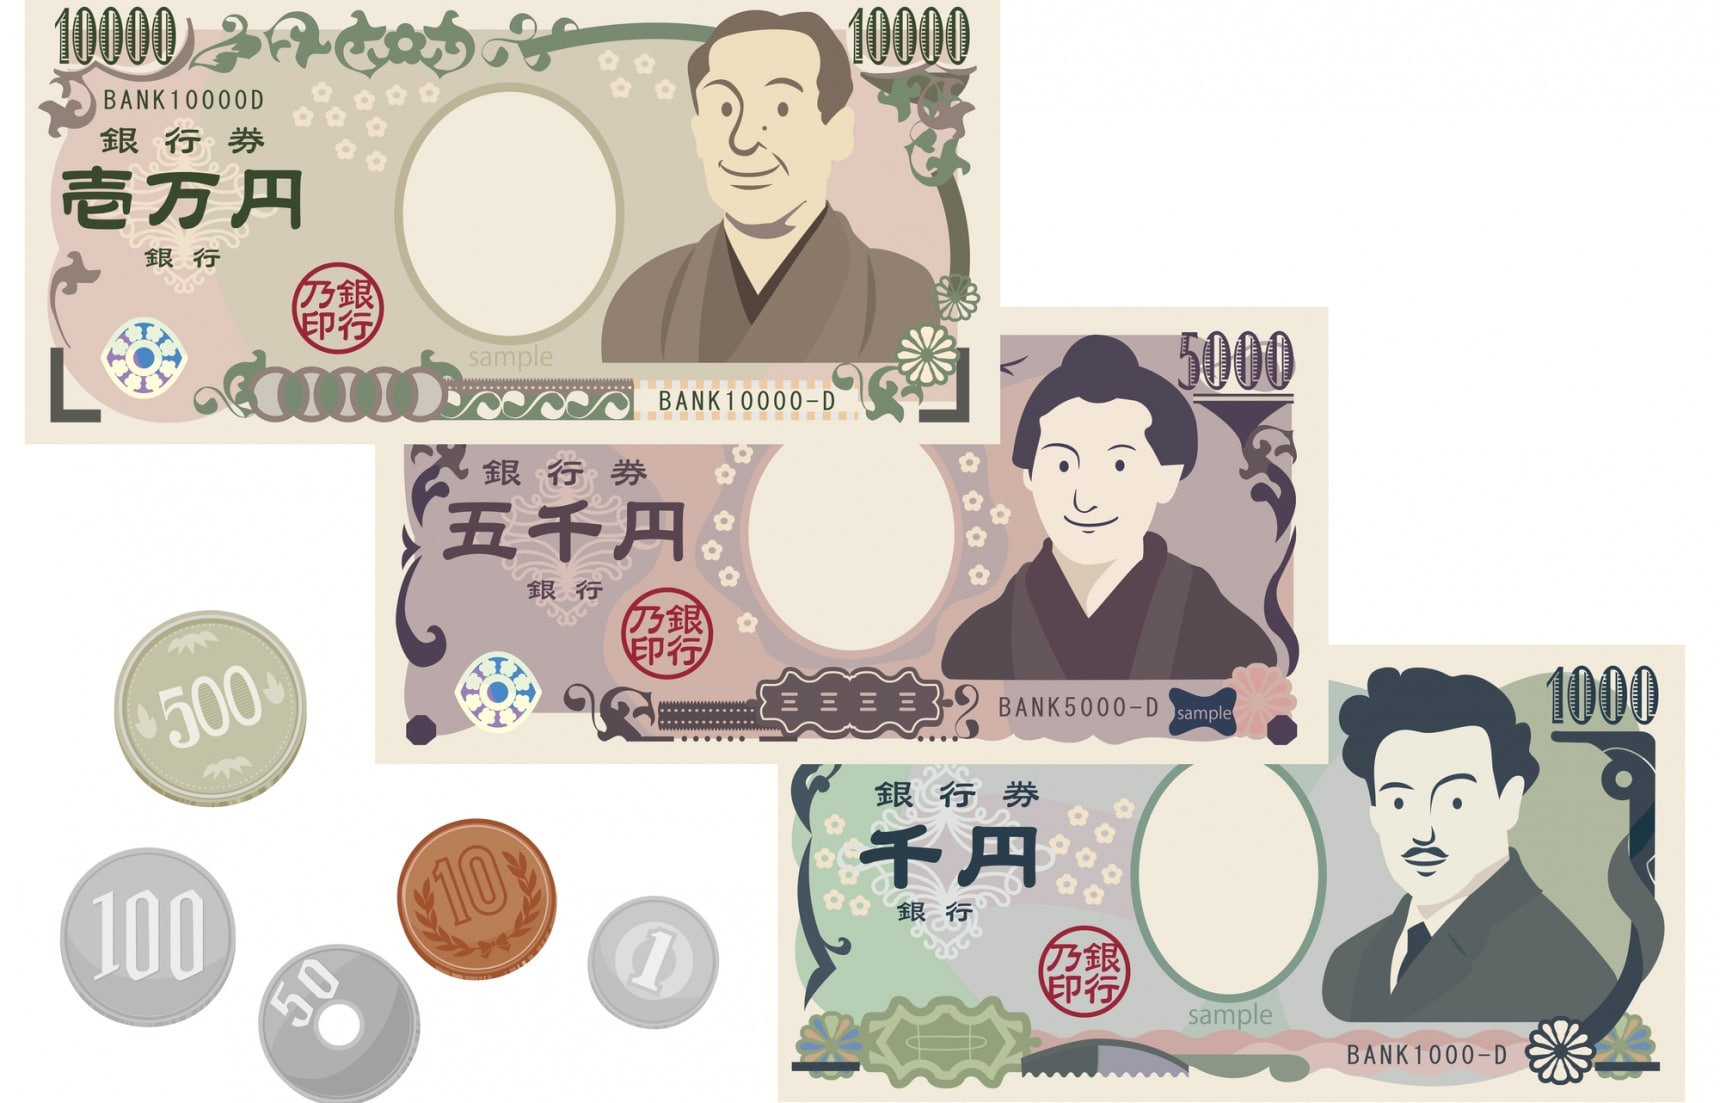 เหรียญ ธนบัตร และเงินเยนญี่ปุ่น | All About Japan